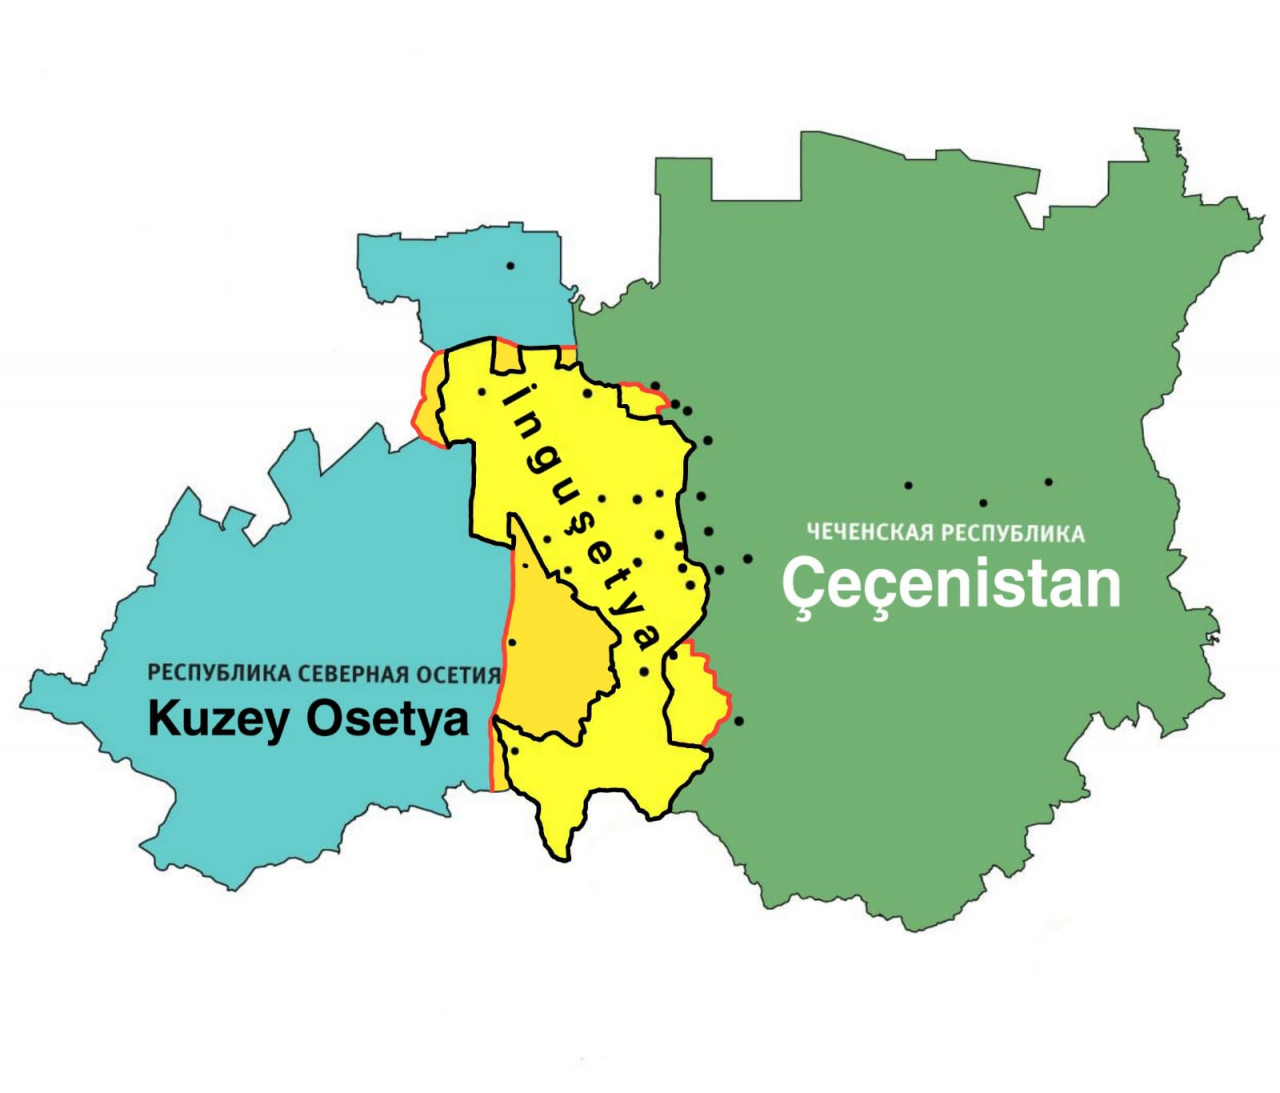 В два района отправлены. Граница между Чечней и Ингушетией 2018. Граница Чечни и Ингушетии после 2018 года на карте. Чечня и Ингушетия на карте. Граница между Ингушетией и Чечней на карте.